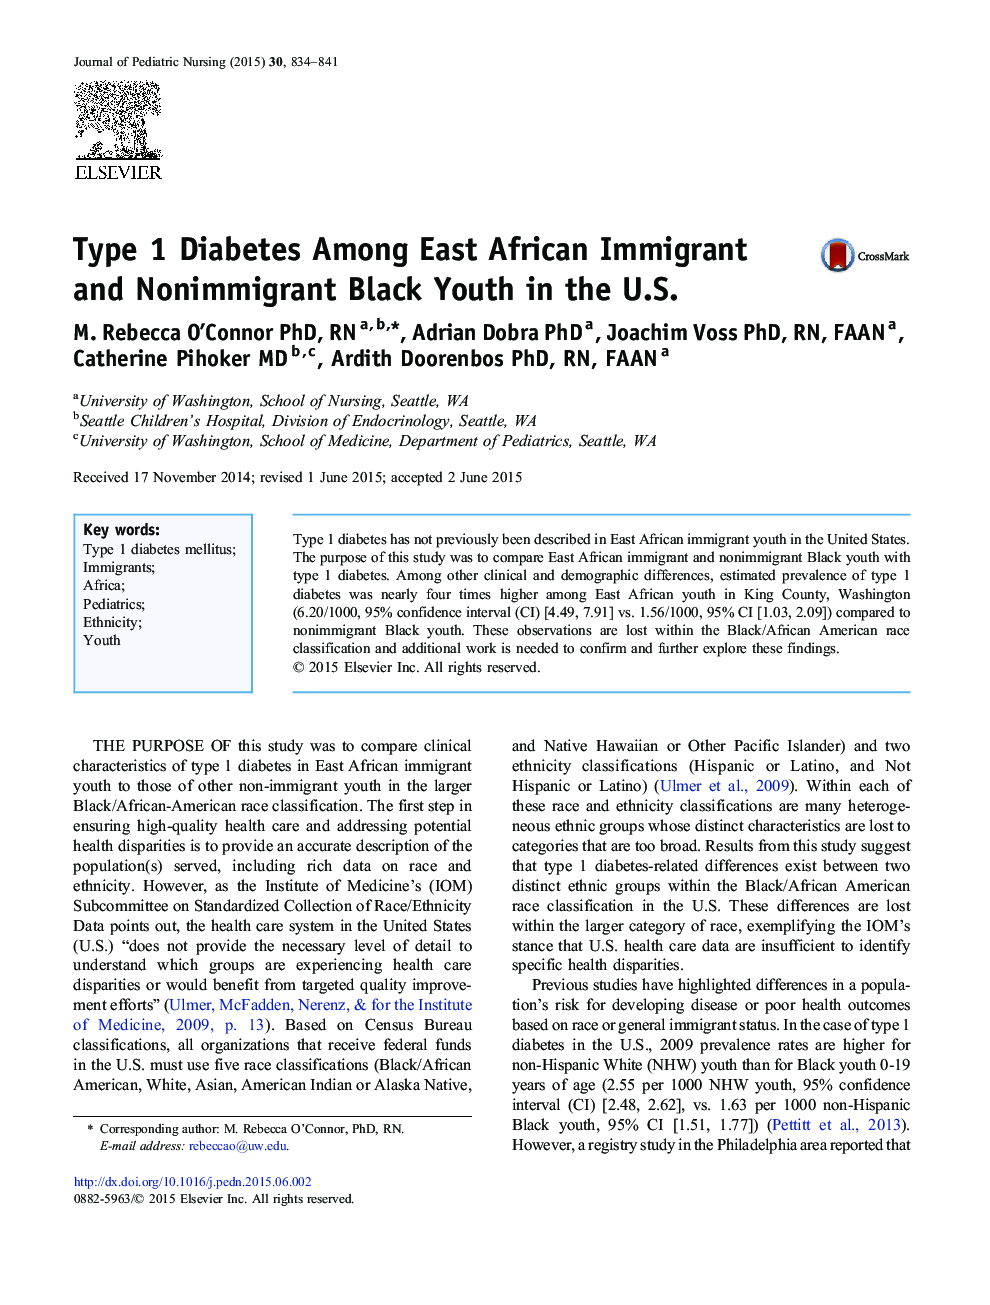 دیابت نوع 1 در میان جوانان سیاهپوست مهاجر و غیرمهاجر آفریقایی شرق در ایالات متحده